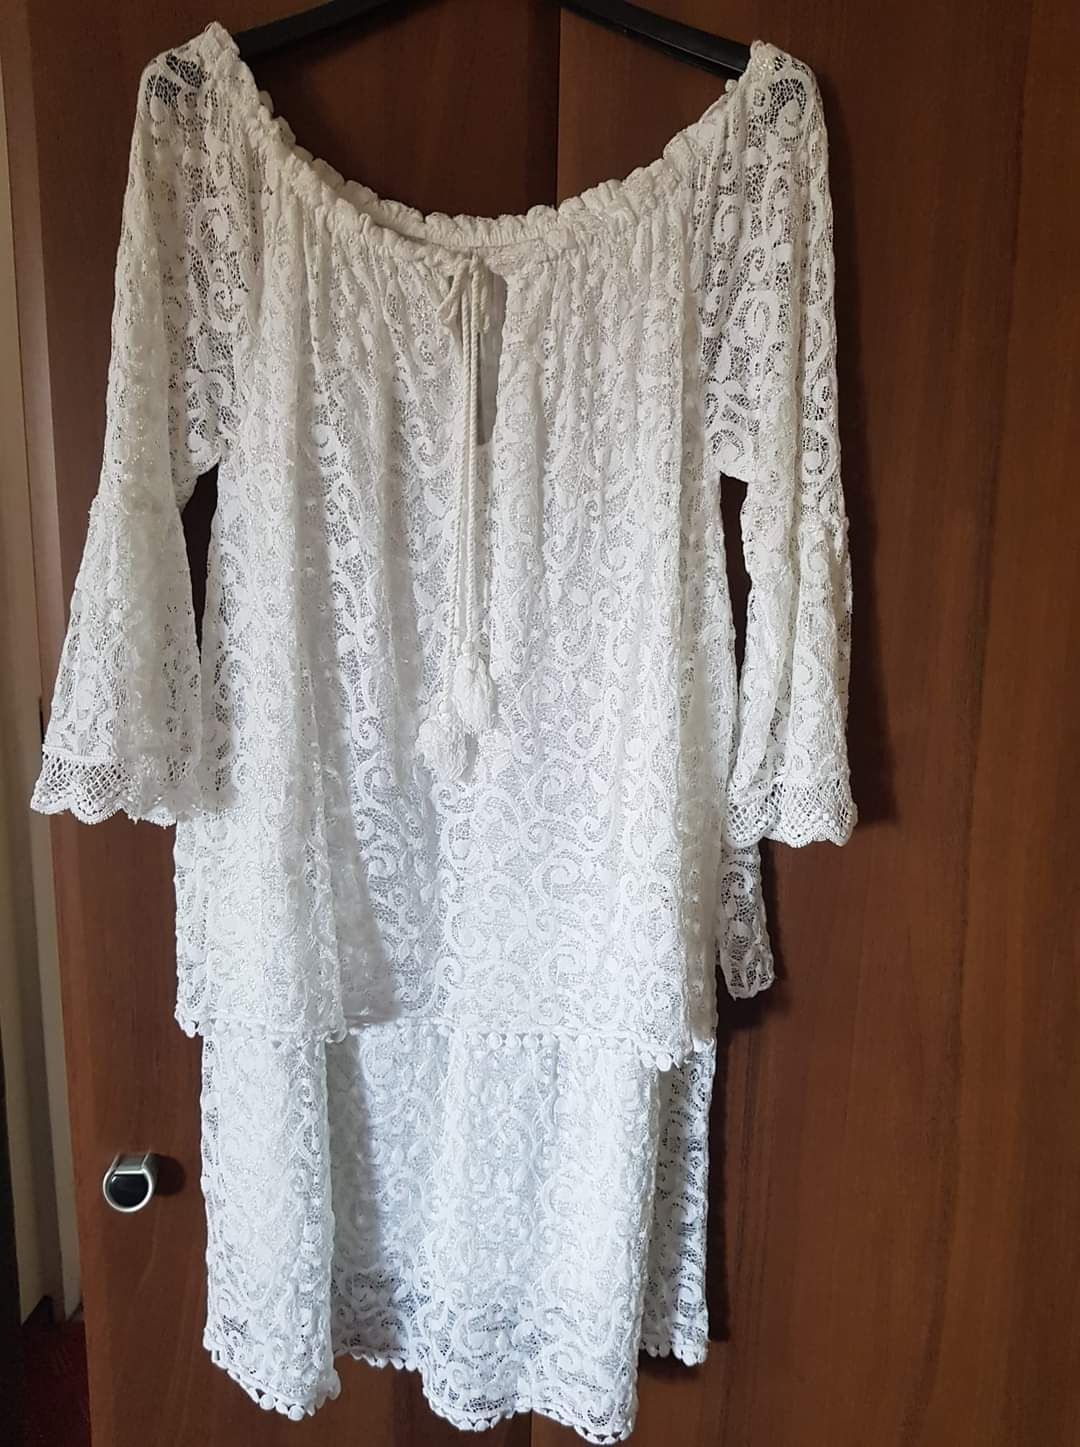 Śliczna biała sukienka letnia S/M NOWA